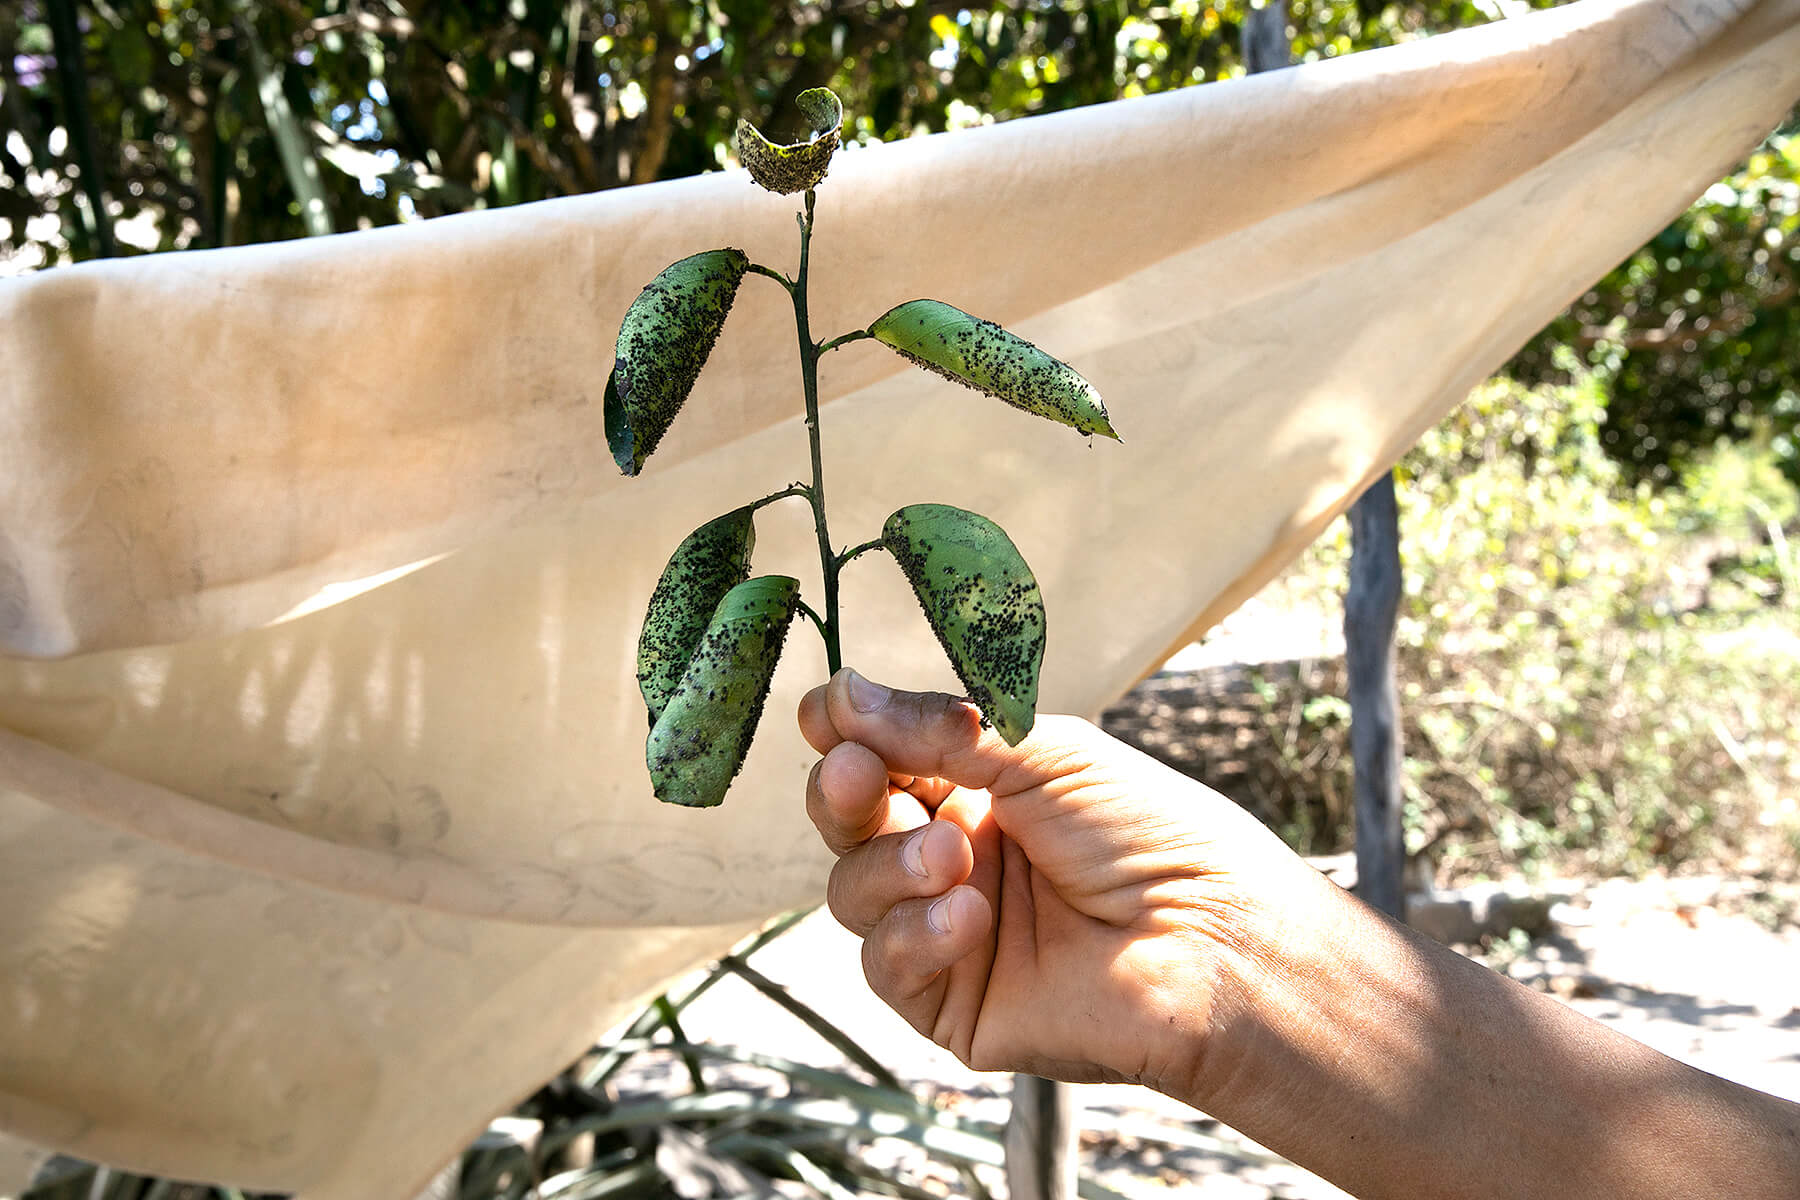 La dona de João Henrique Pereira Mendes Filho ens mostra les fulles d’un arbre malalt, asseguren que a causa dels pesticides de les fazendes que hi ha a prop.